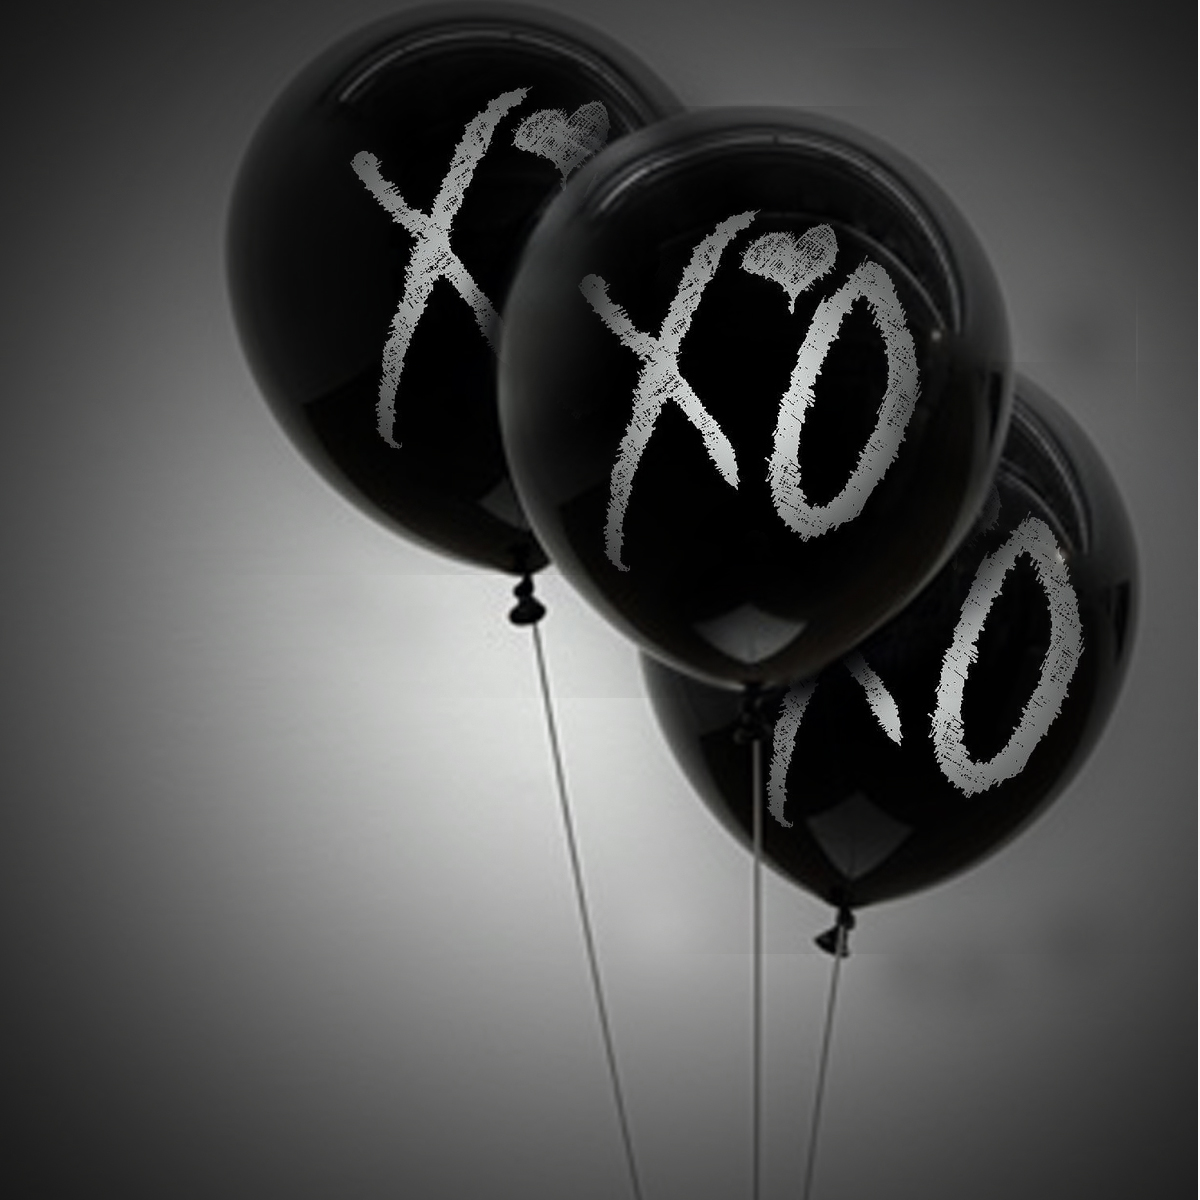 The Weeknd Xo By Eight-wonder - Xo The Weeknd - HD Wallpaper 